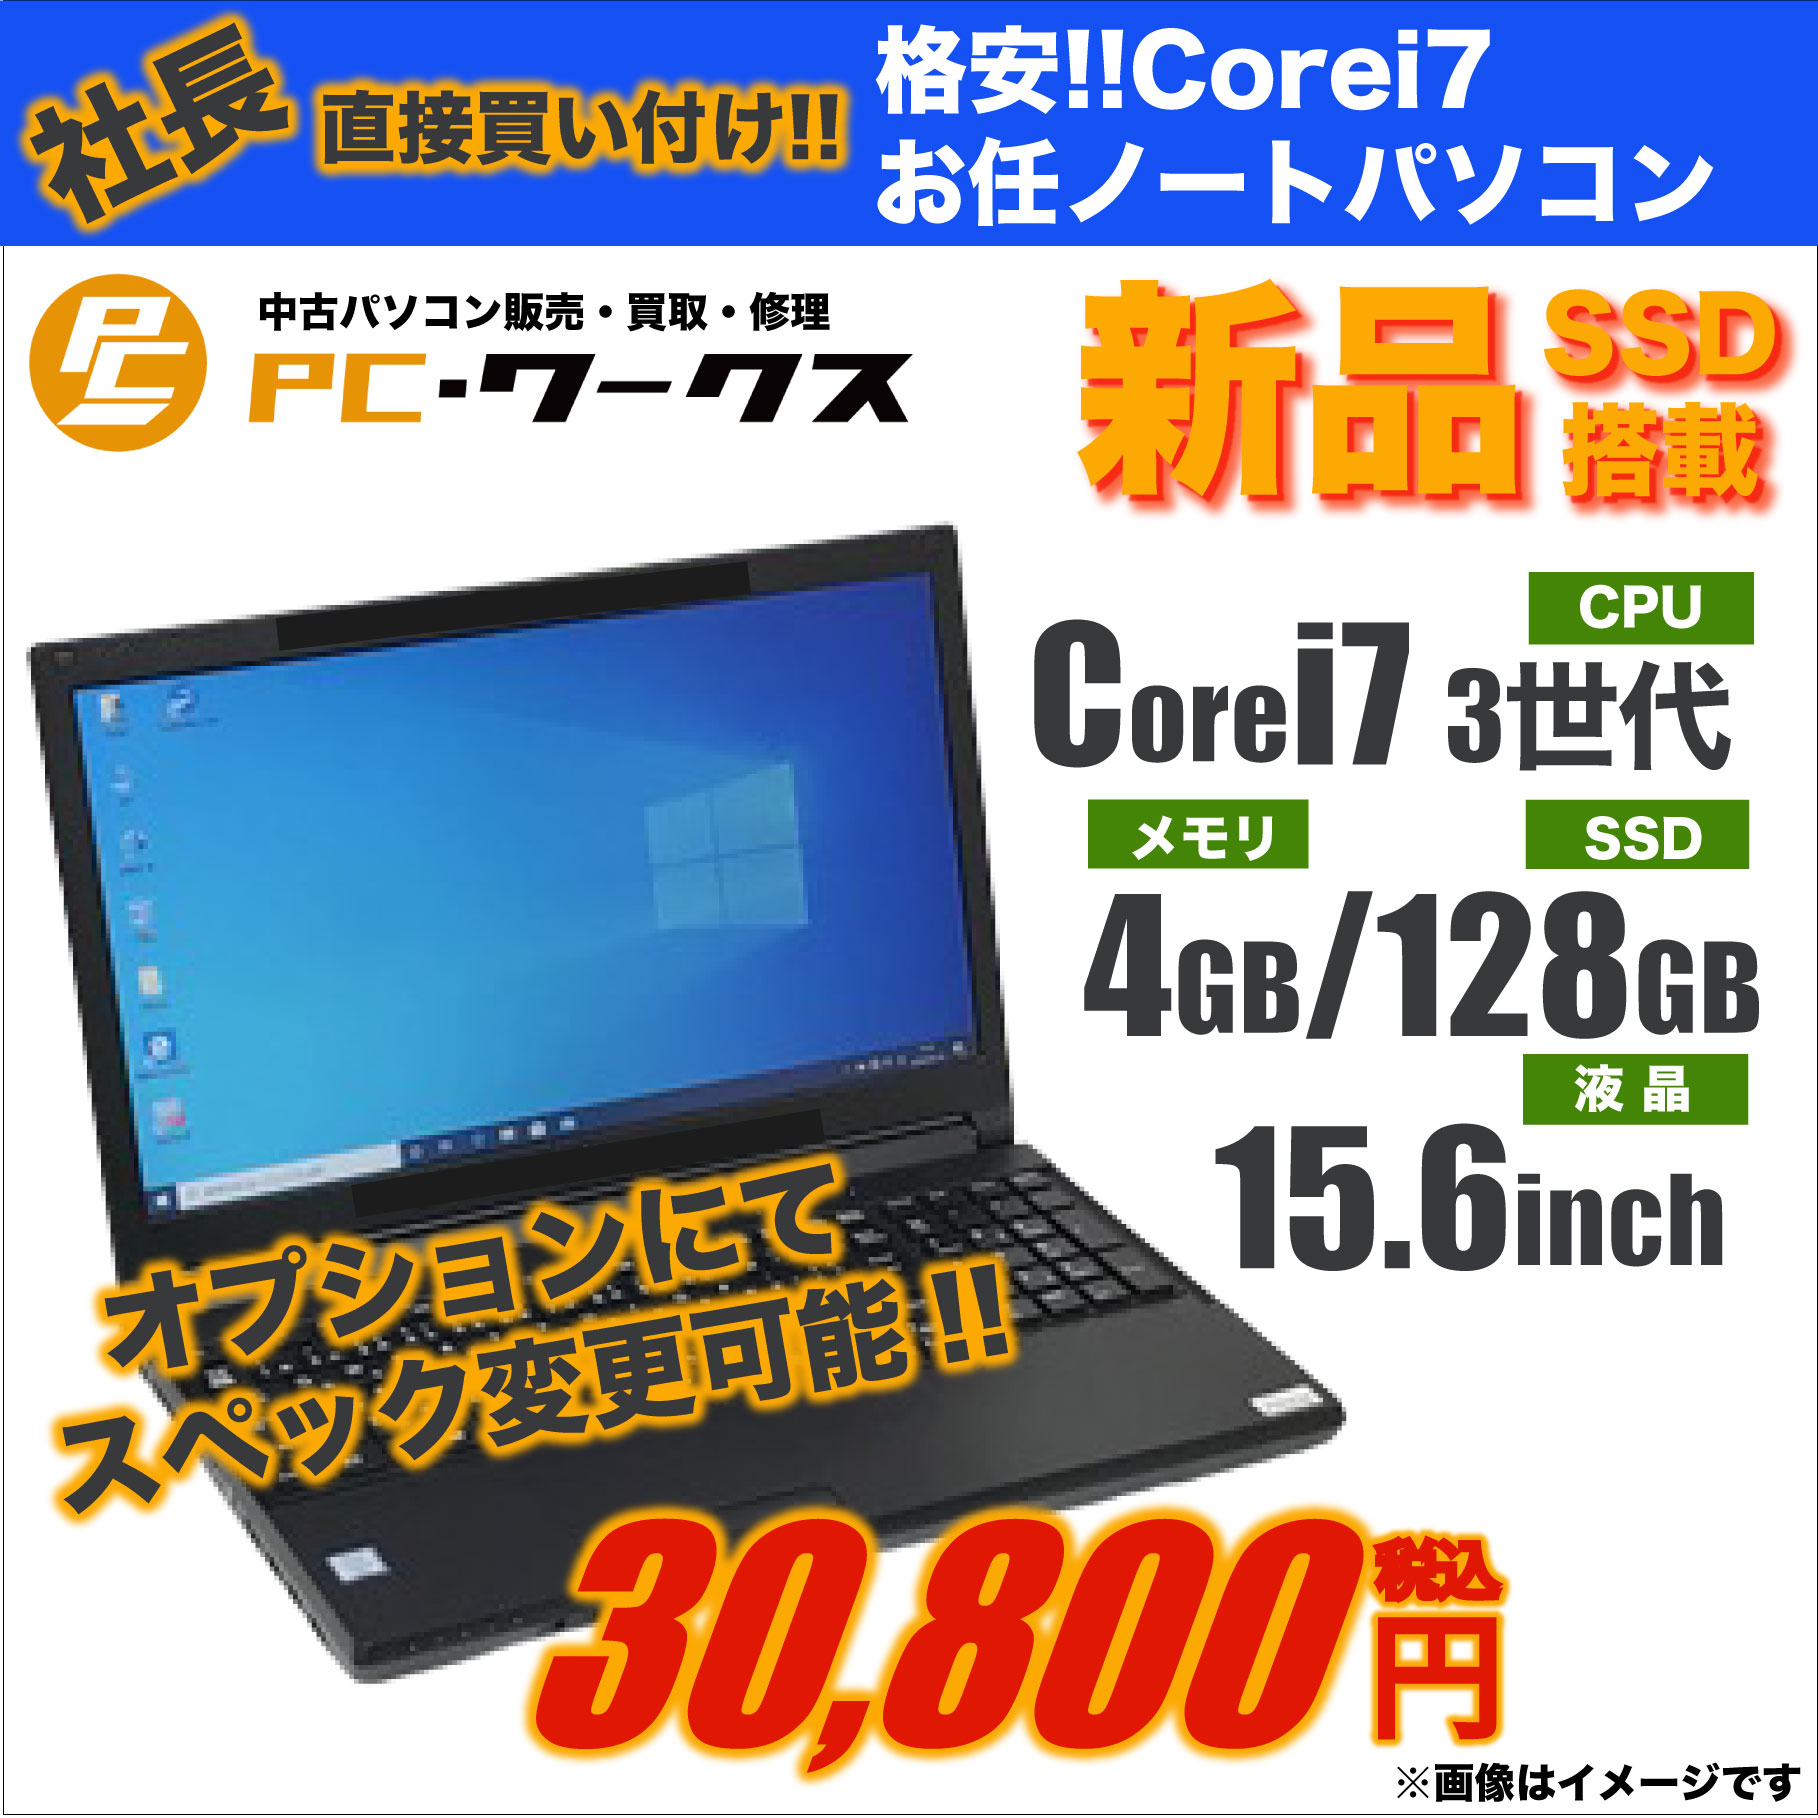 格安!!Corei7お任せノートパソコン/15.6inch